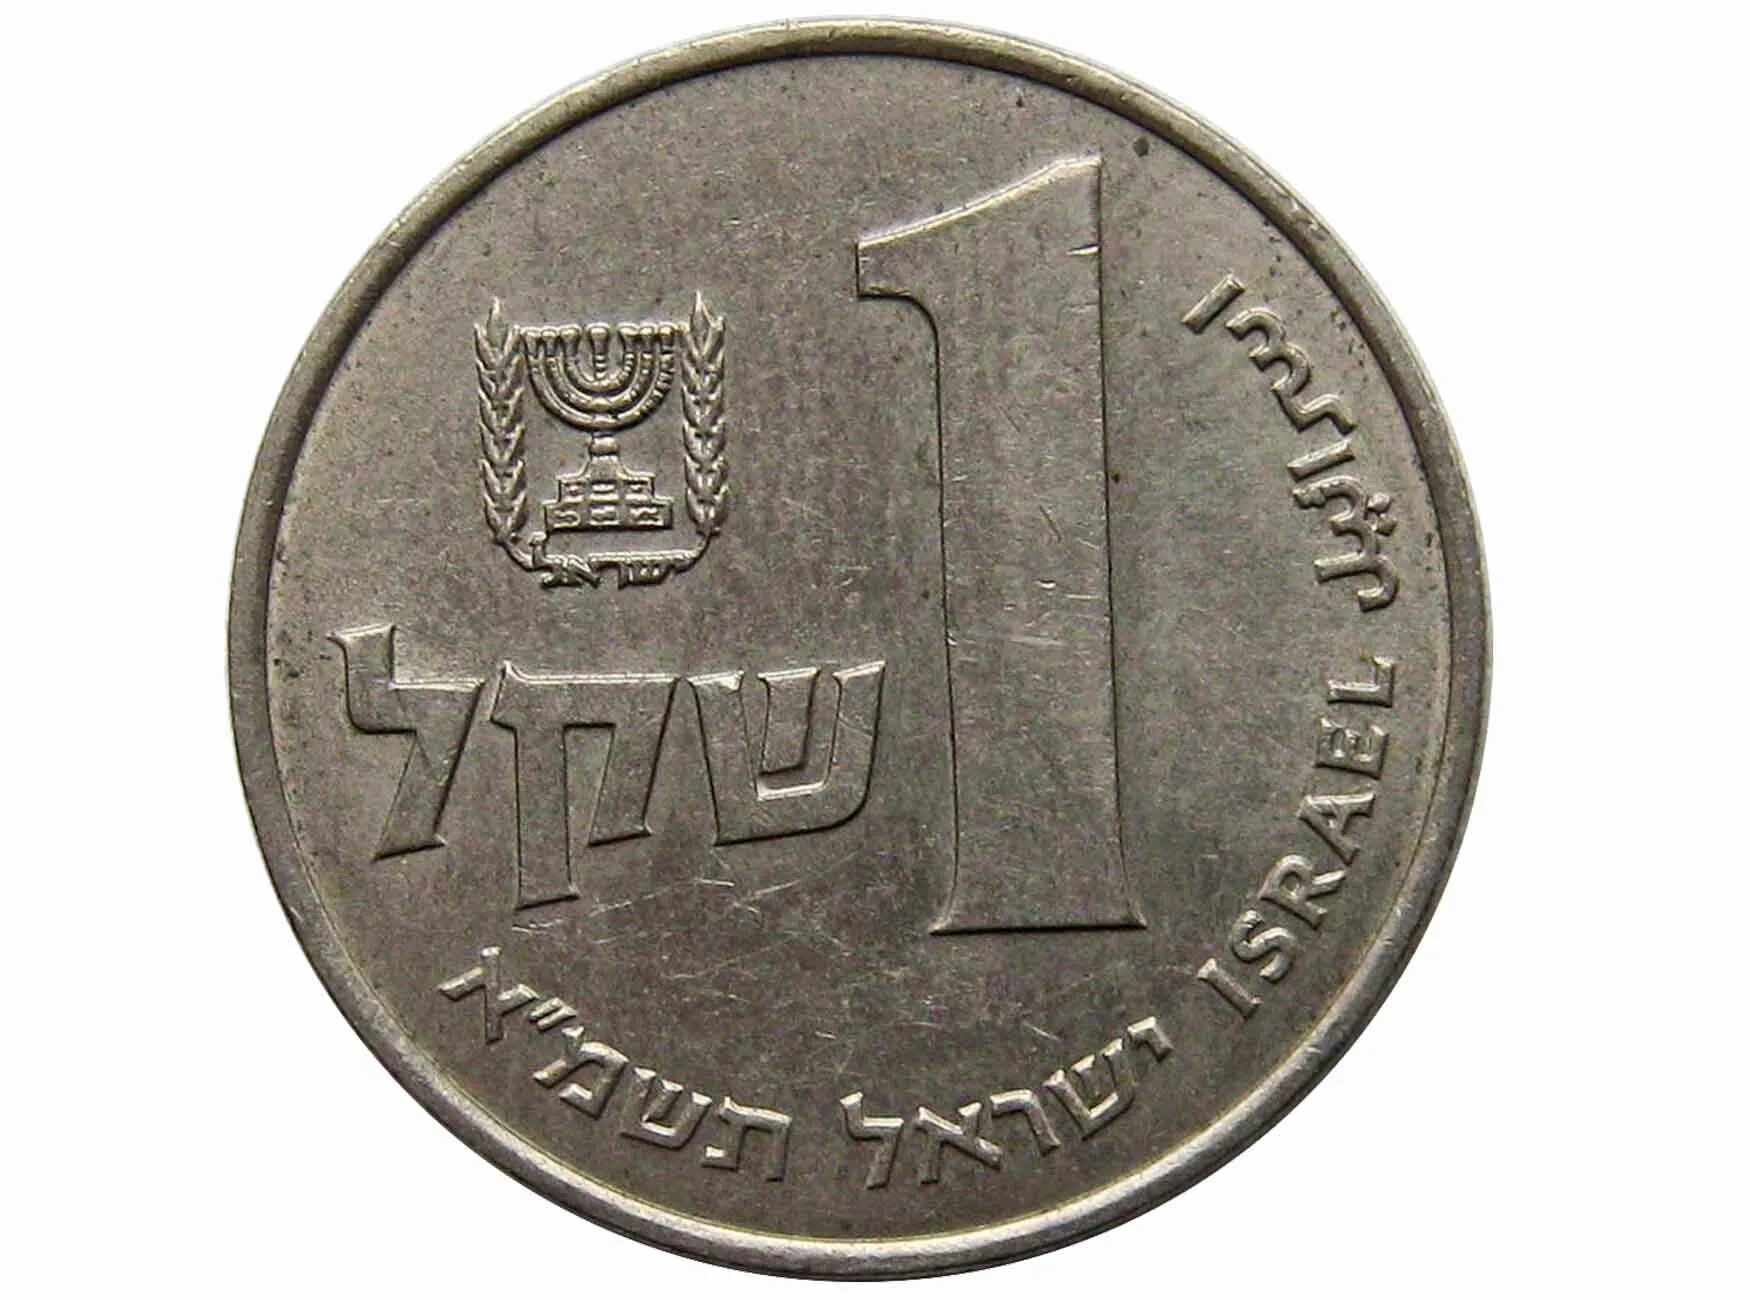 1 Шекель 1981. 1 Шекель монета. Израильская монета 1. Руб шекель